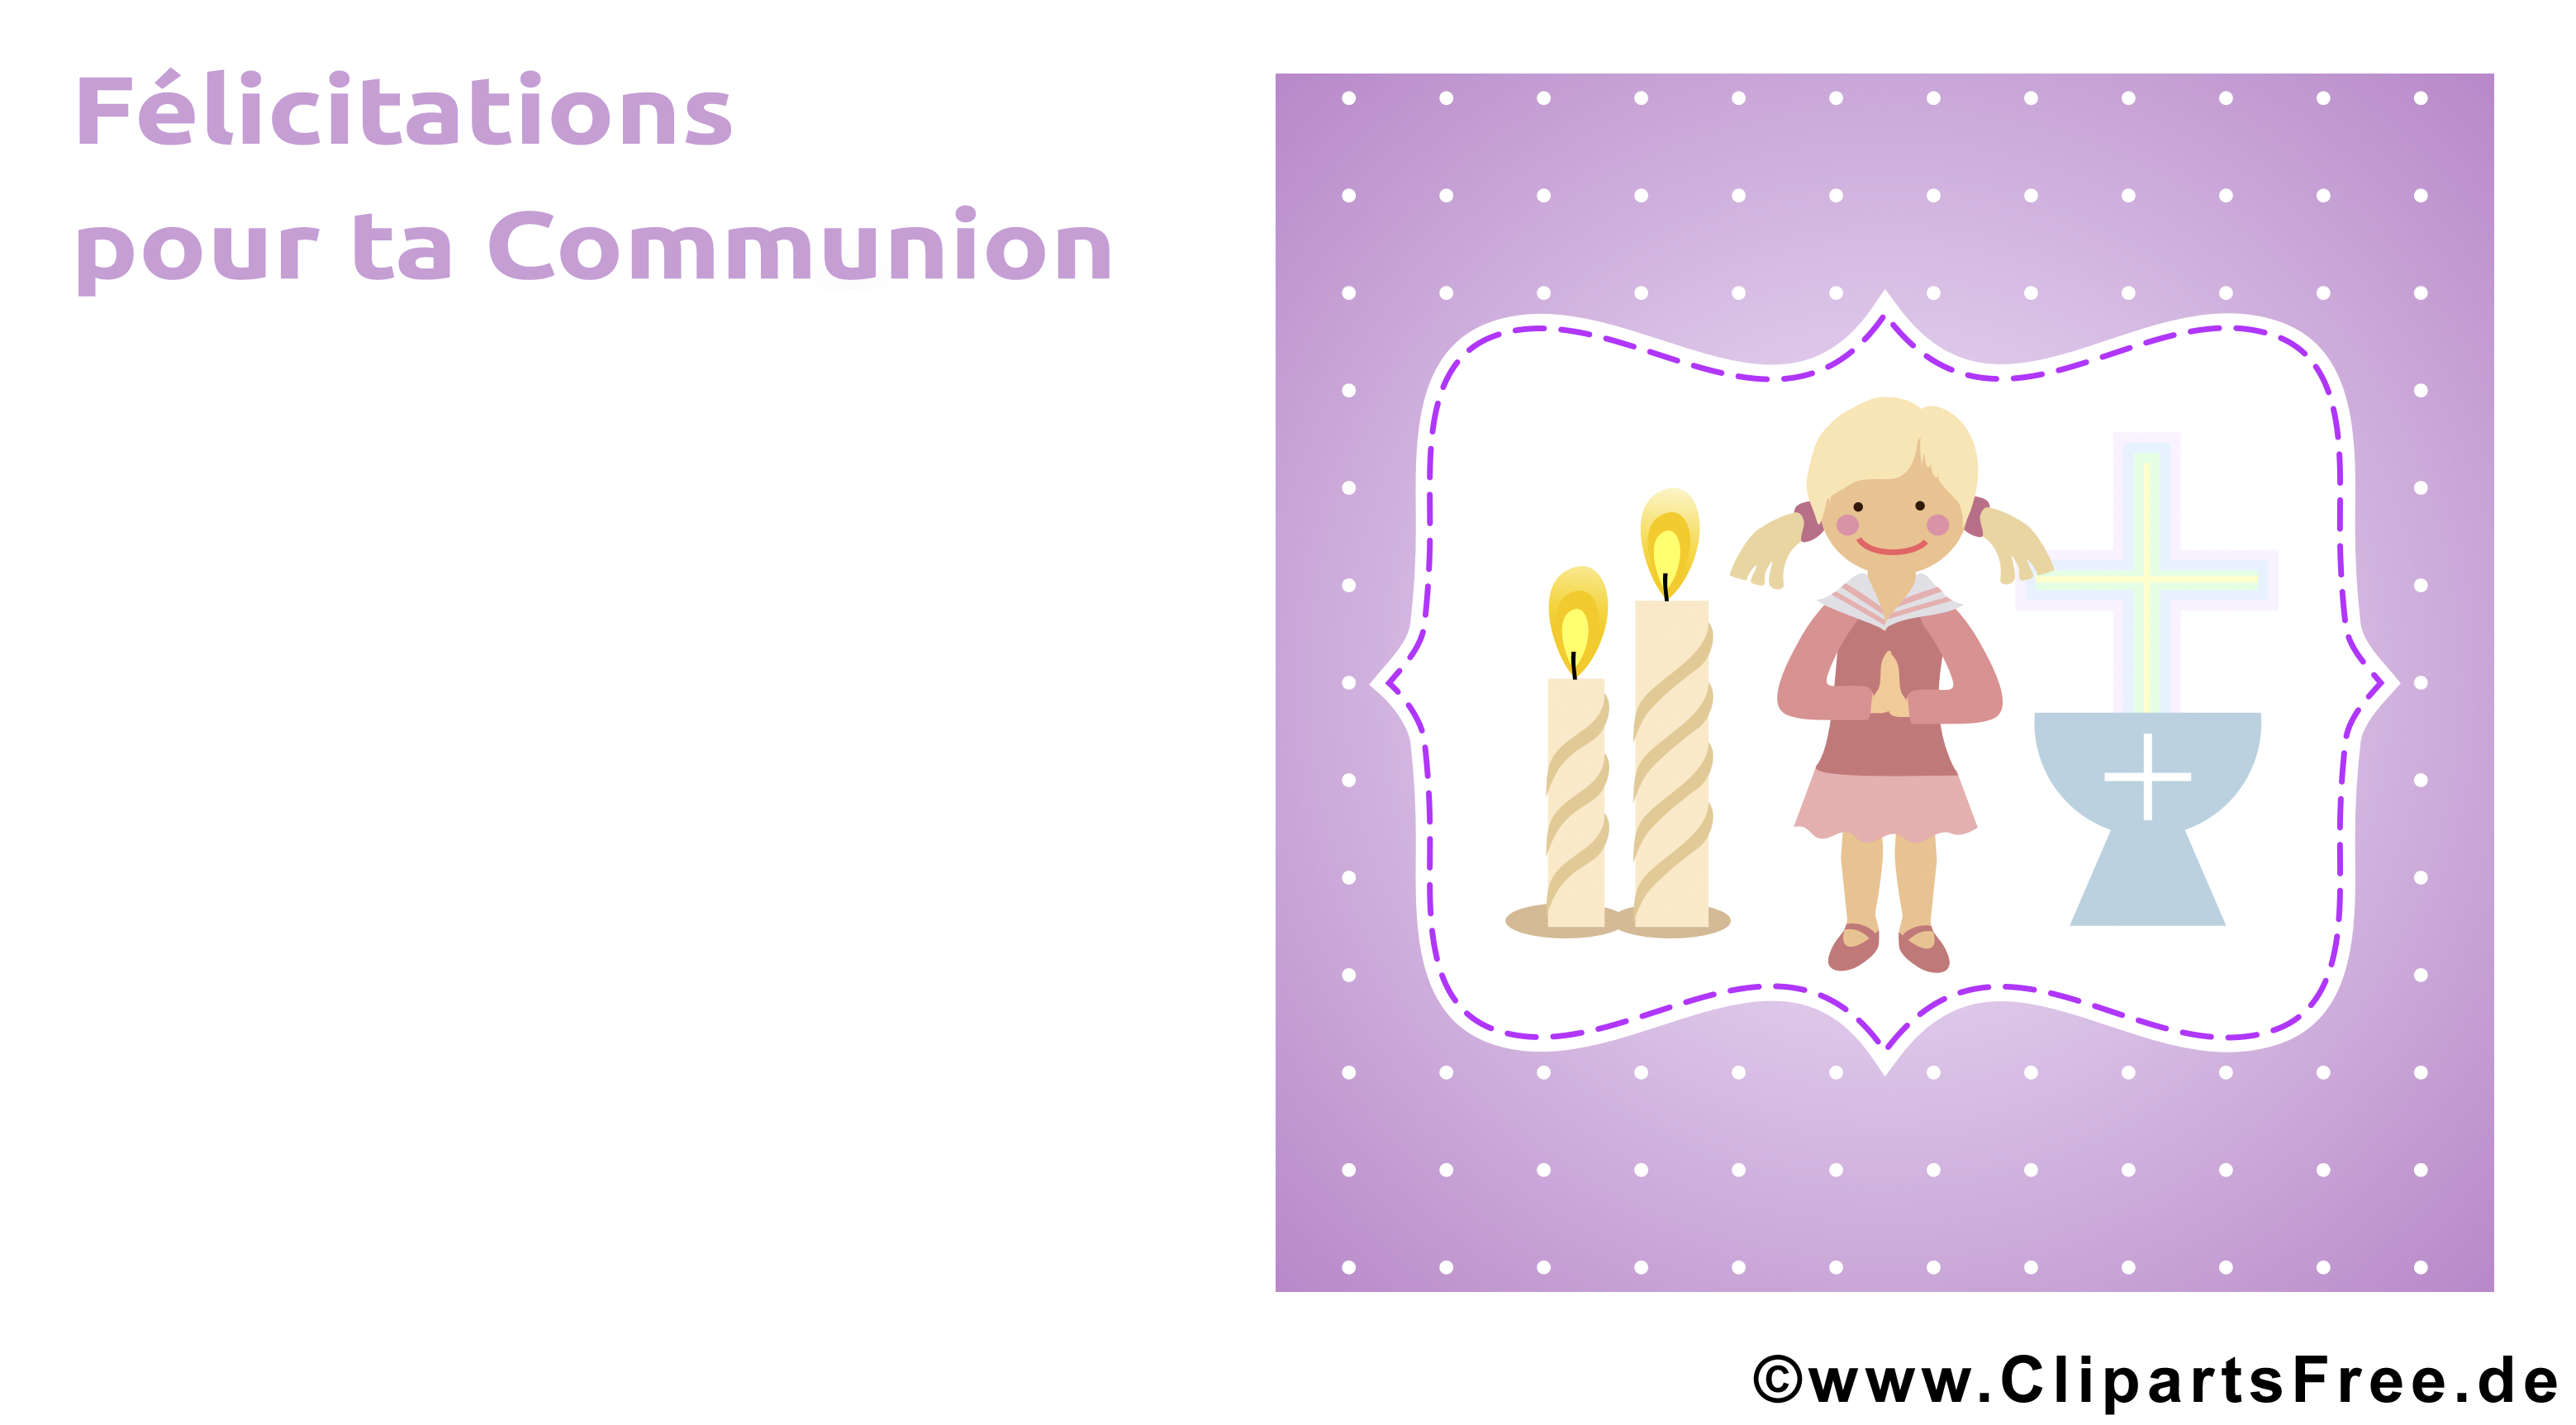 Prière communion illustration à télécharger